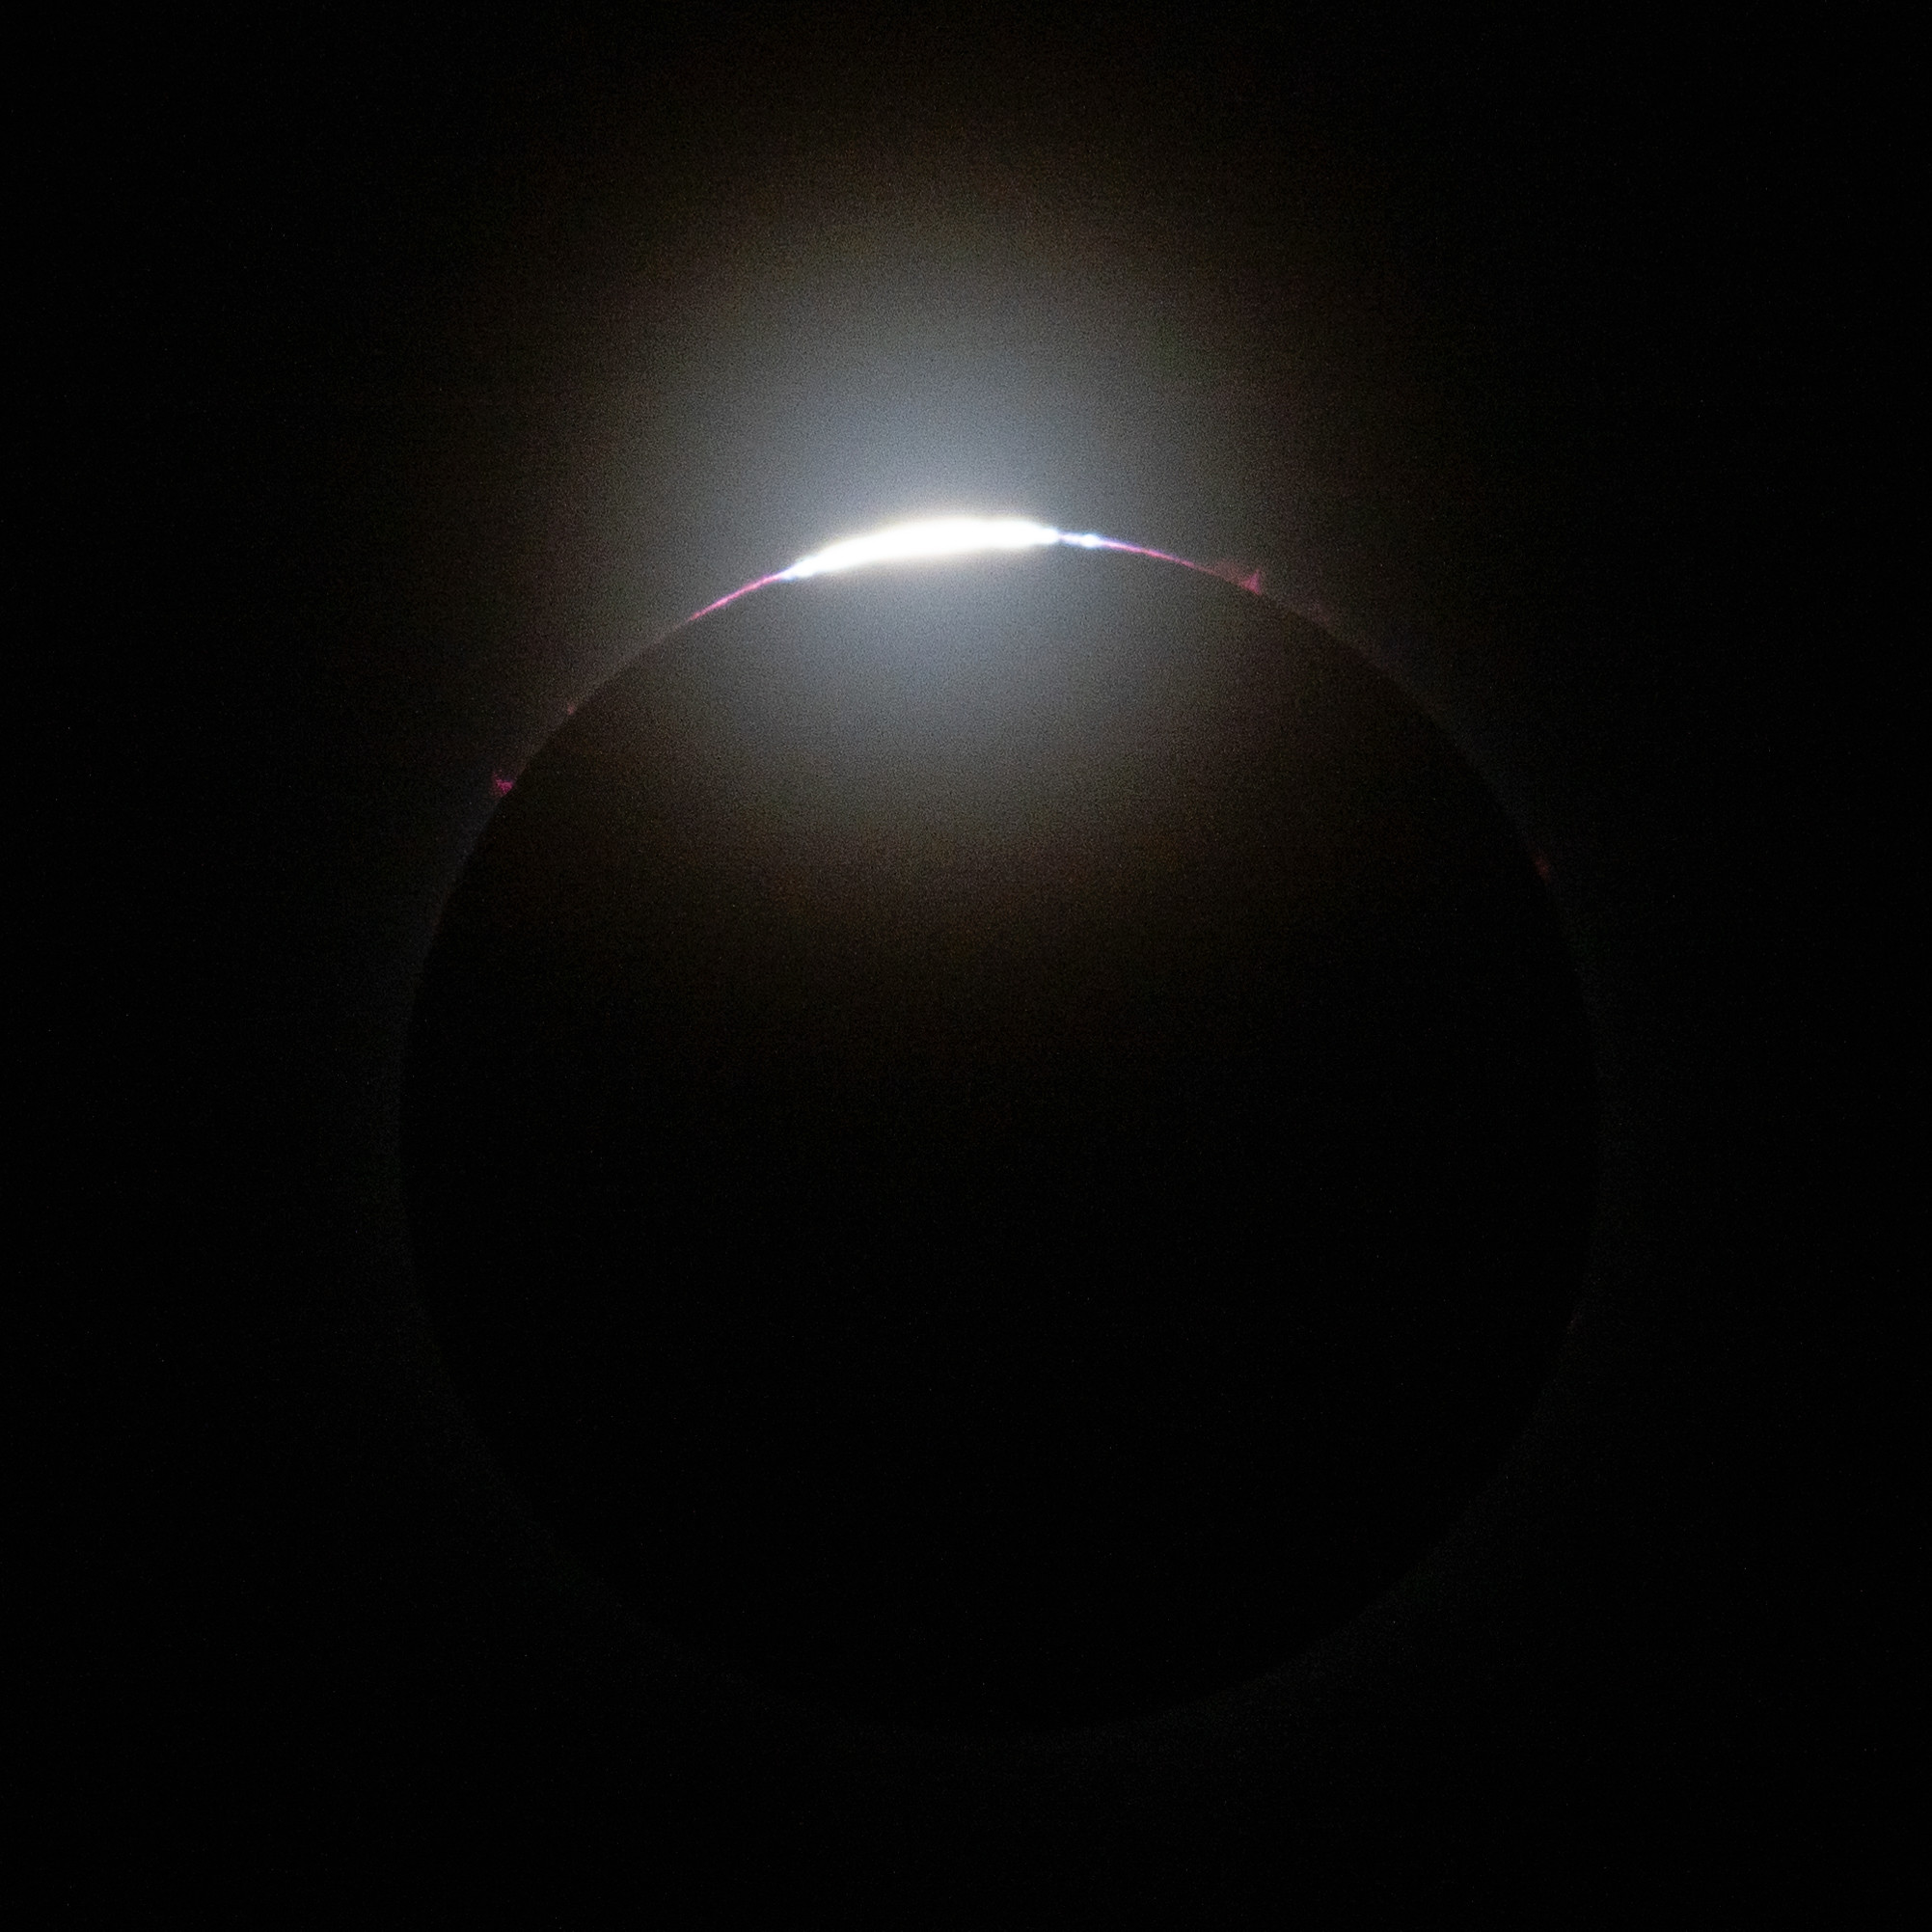 Gli ultimi raggi del sole fanno capolino sulle montagne della Luna in questa immagine dell'eclissi solare totale dell'8 aprile